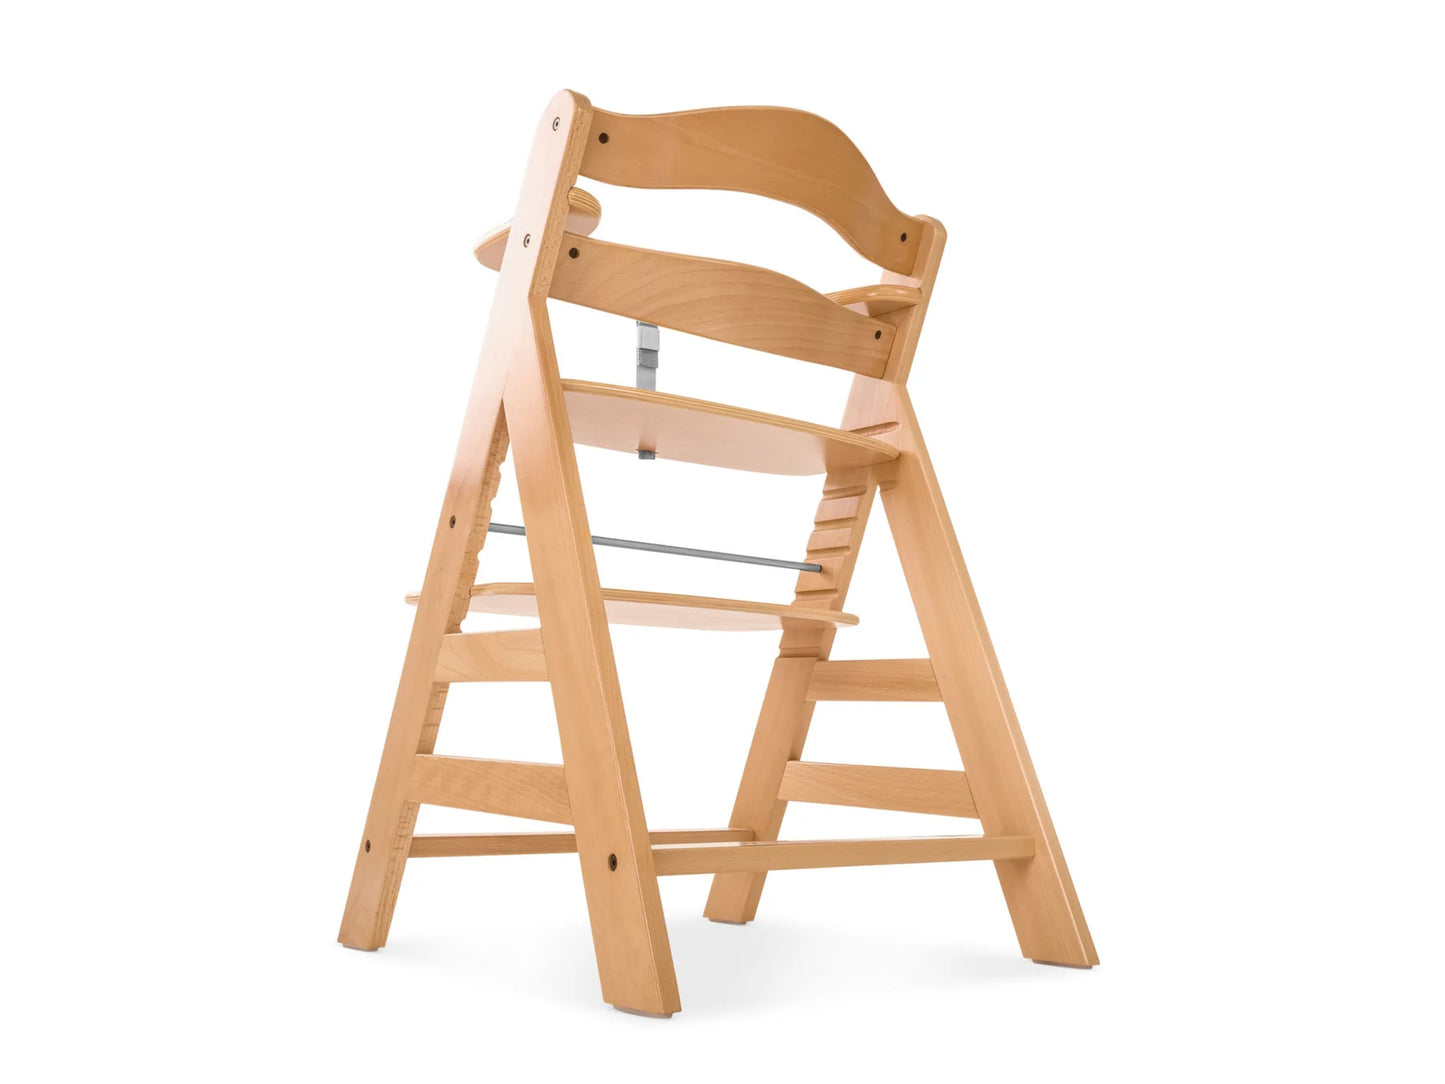 Hauck Alpha+ Wooden Highchair [Natural]